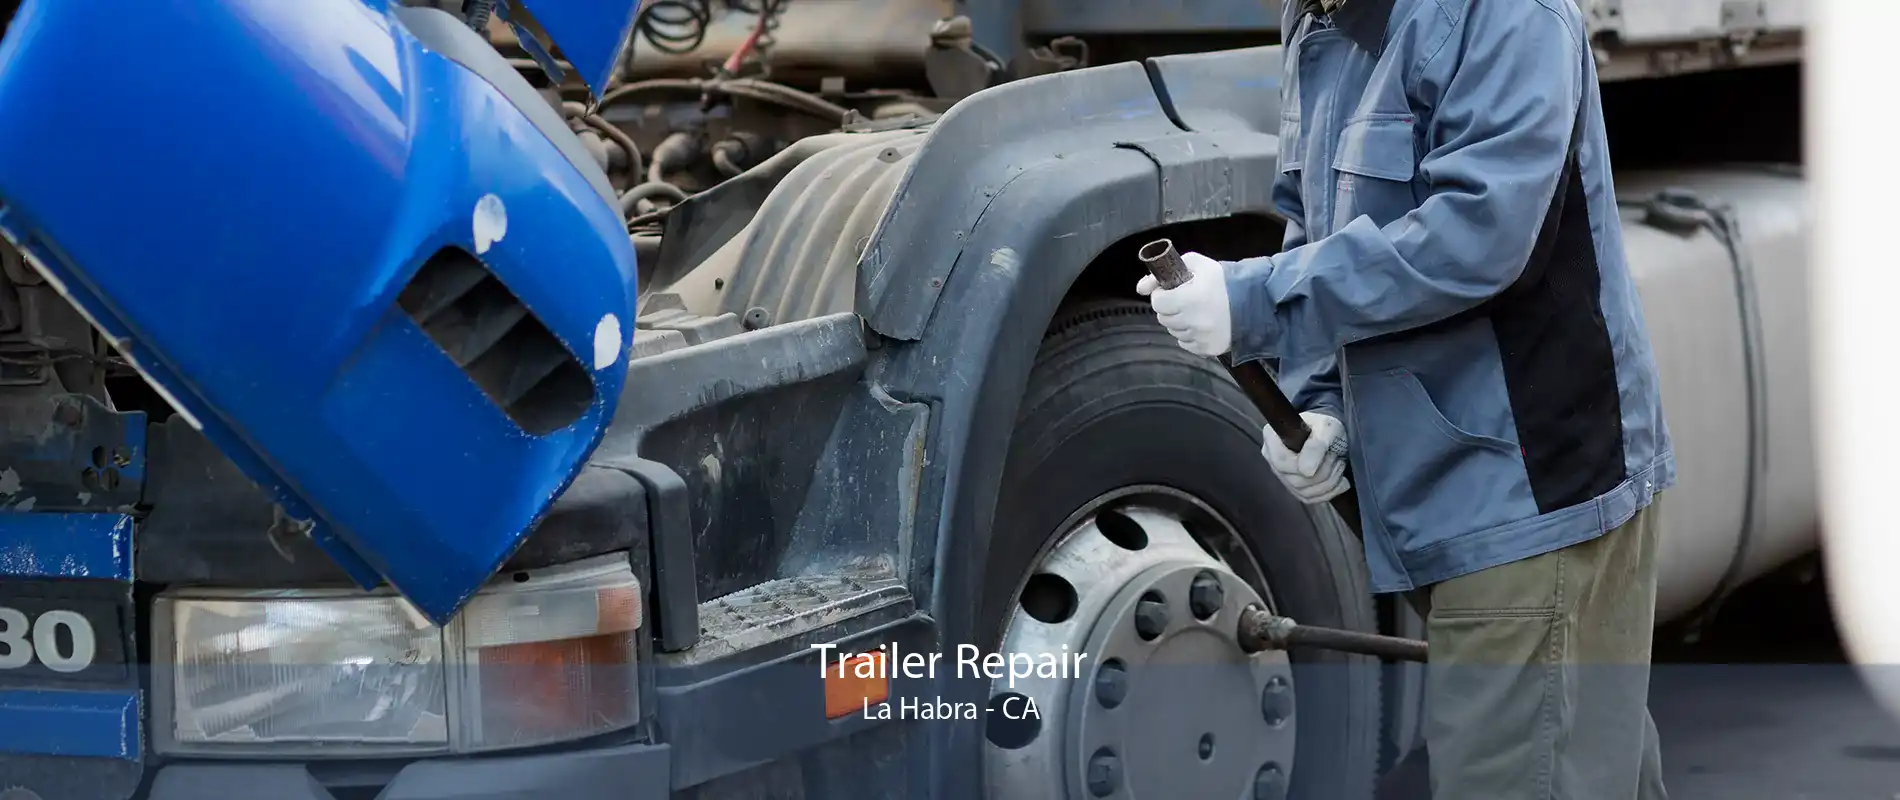 Trailer Repair La Habra - CA